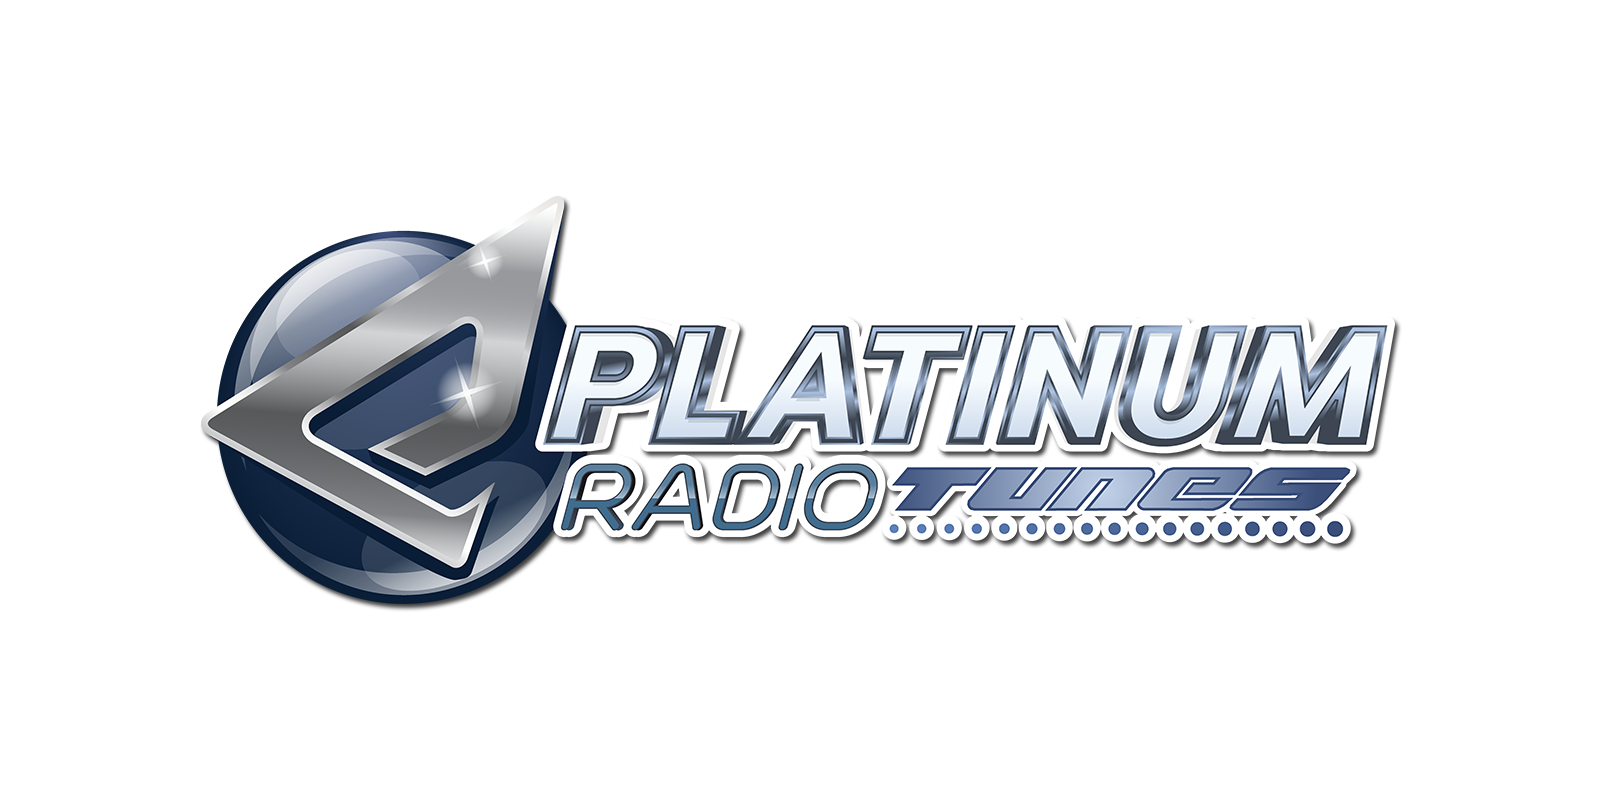 PLATINUM radiotunes logo 1